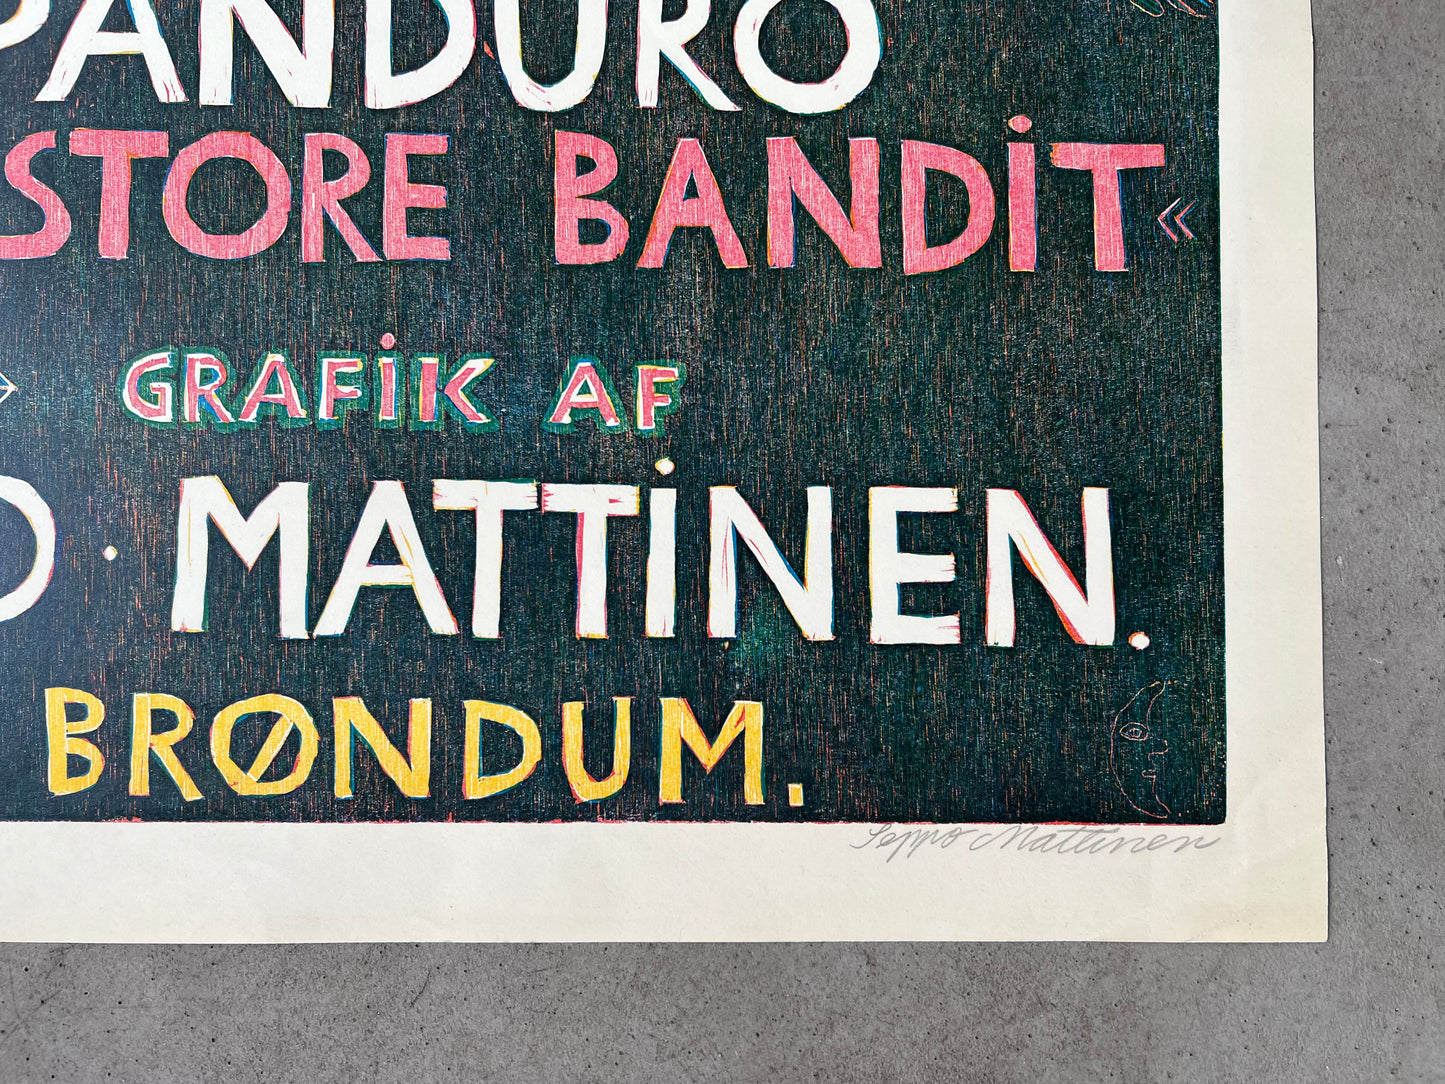 Seppo Mattinen. "Panduro the Great Bandit", 1973